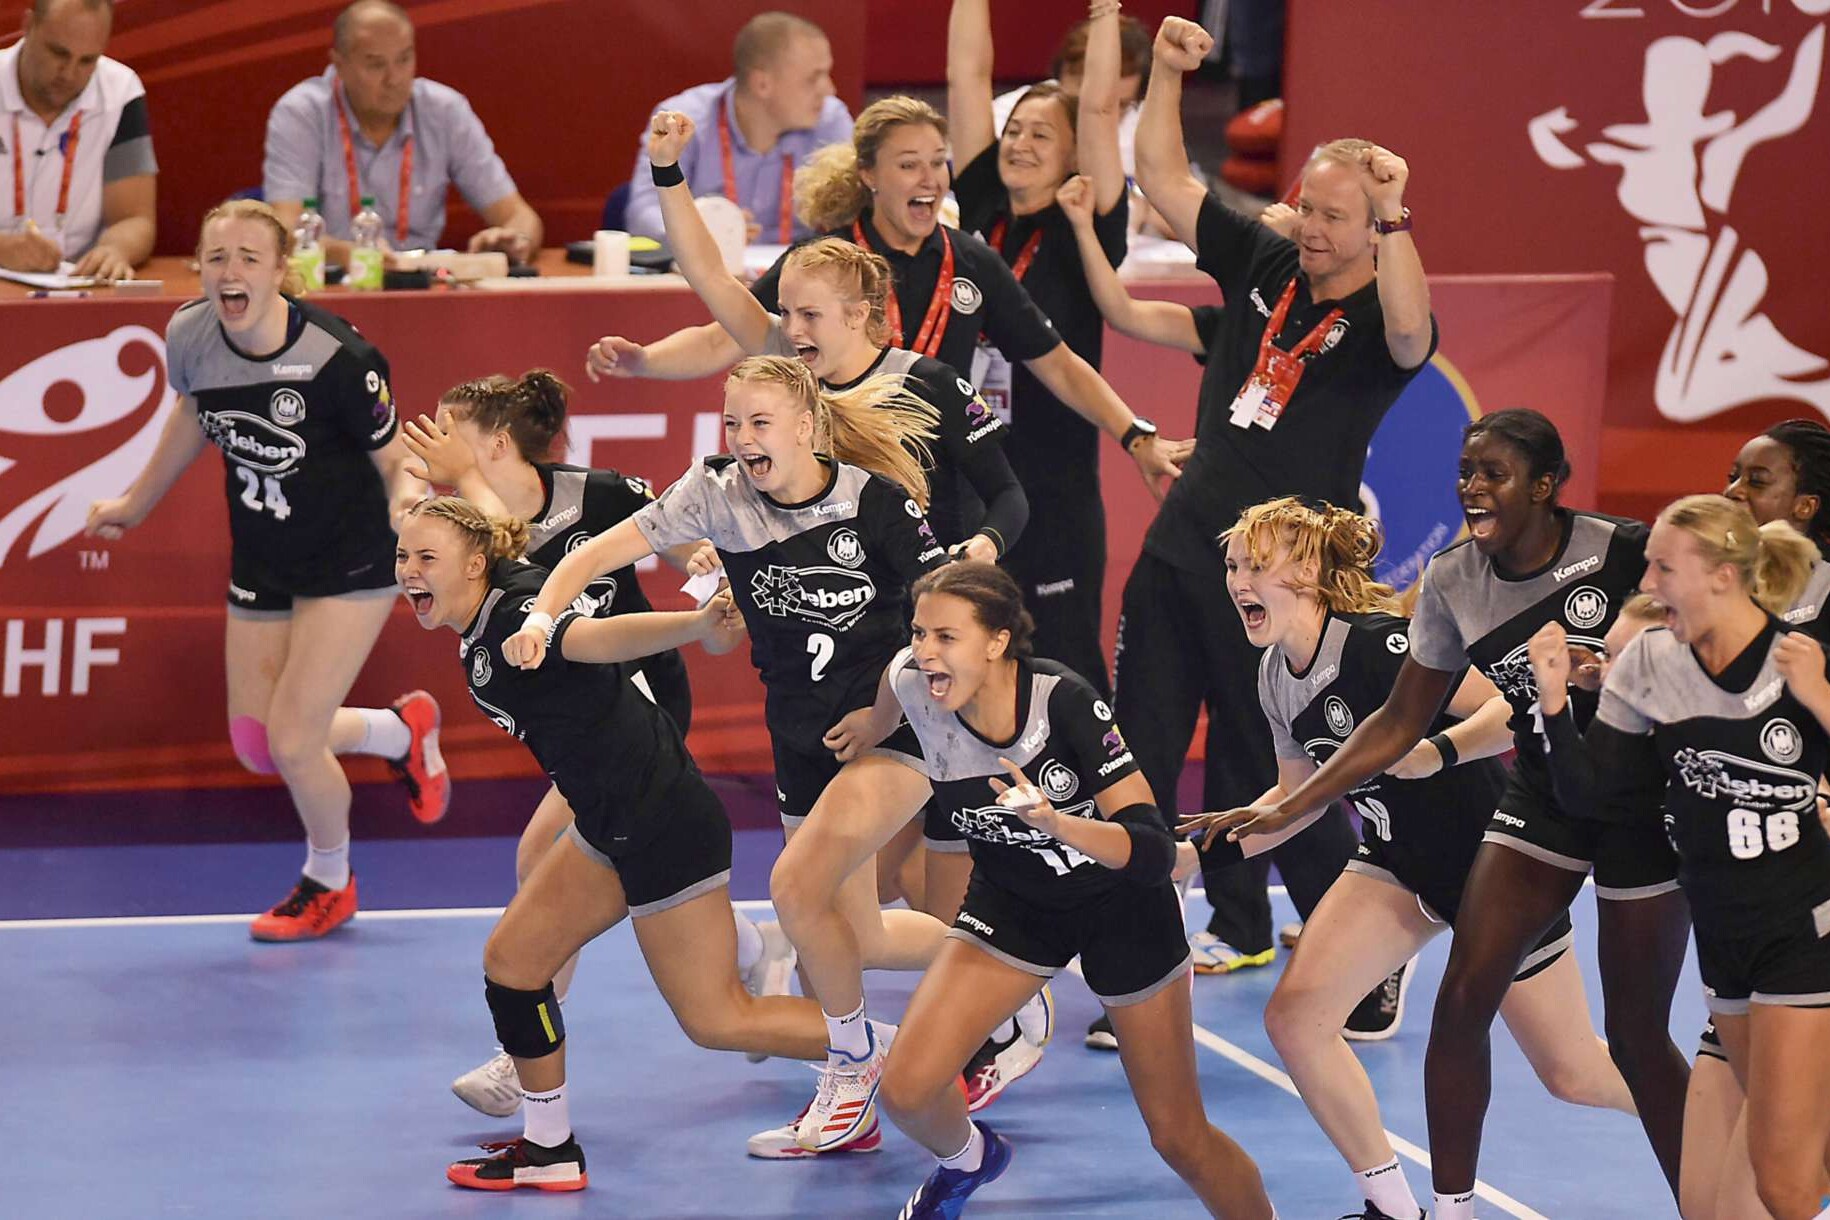 Spielerinnen der deutschen U18-Handball-Nationalmannschaft stürmen auf das Spielfeld.